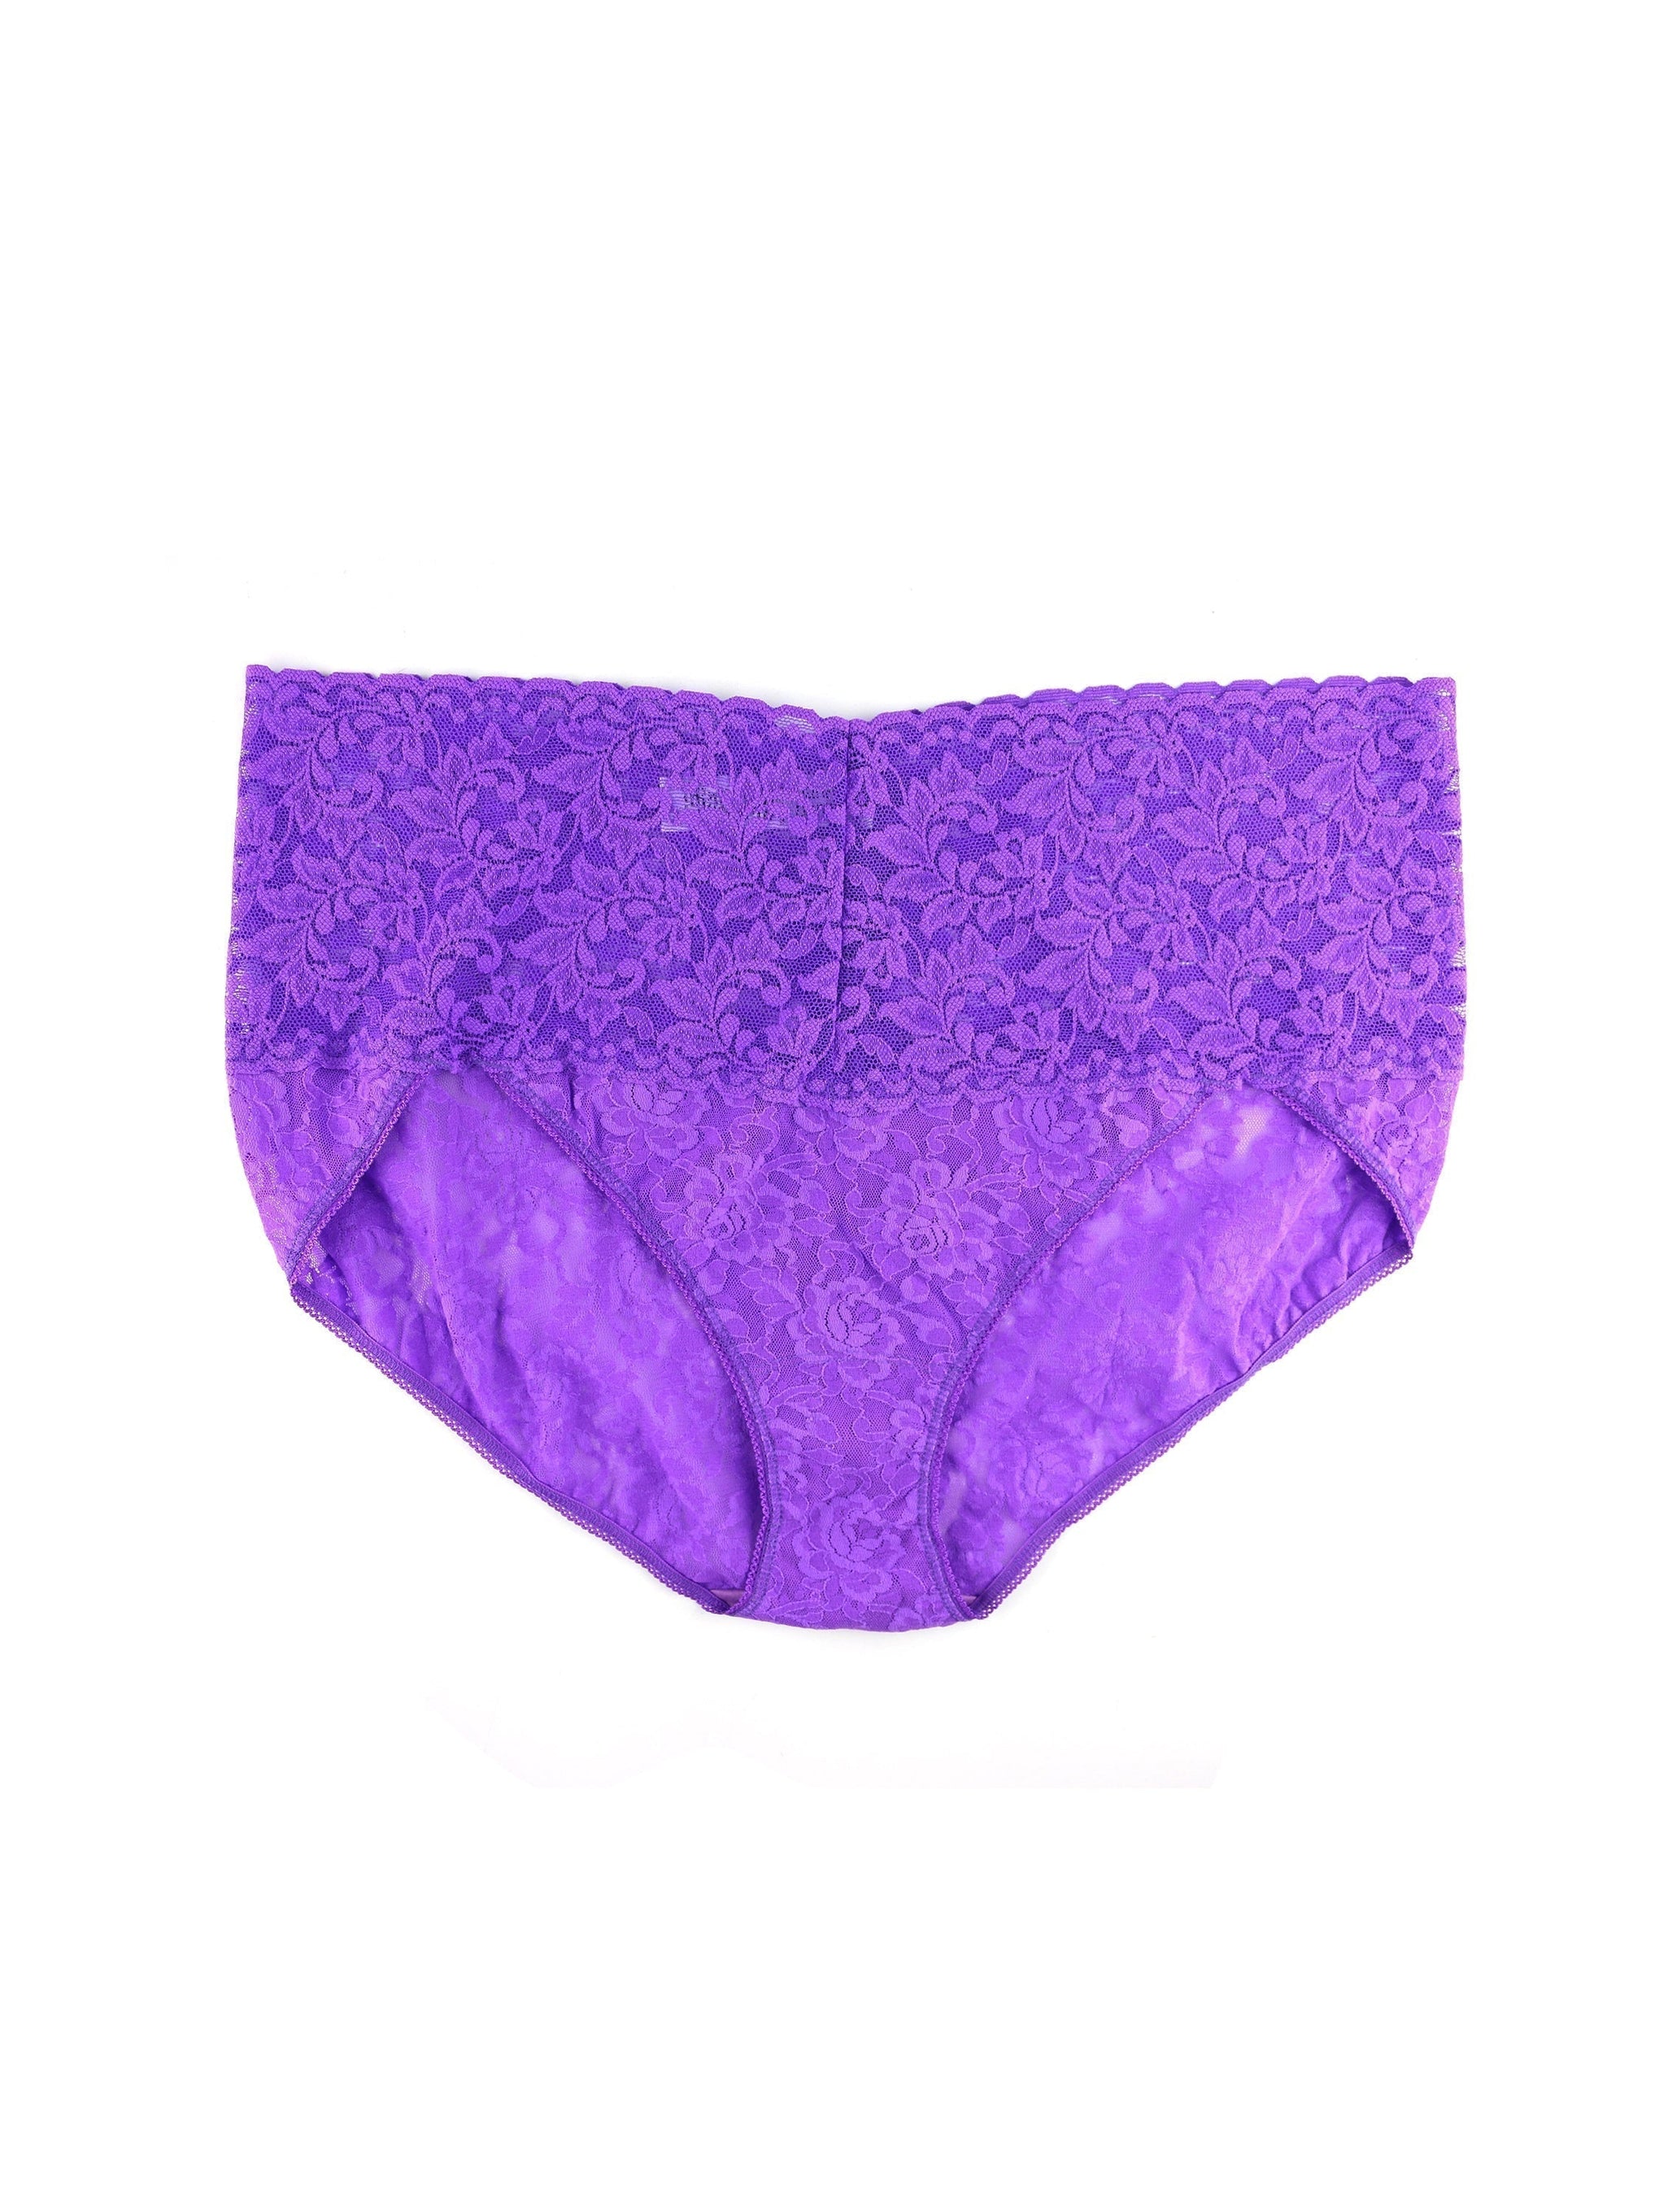 Retro Lace V-Kini Vivid Violet Purple